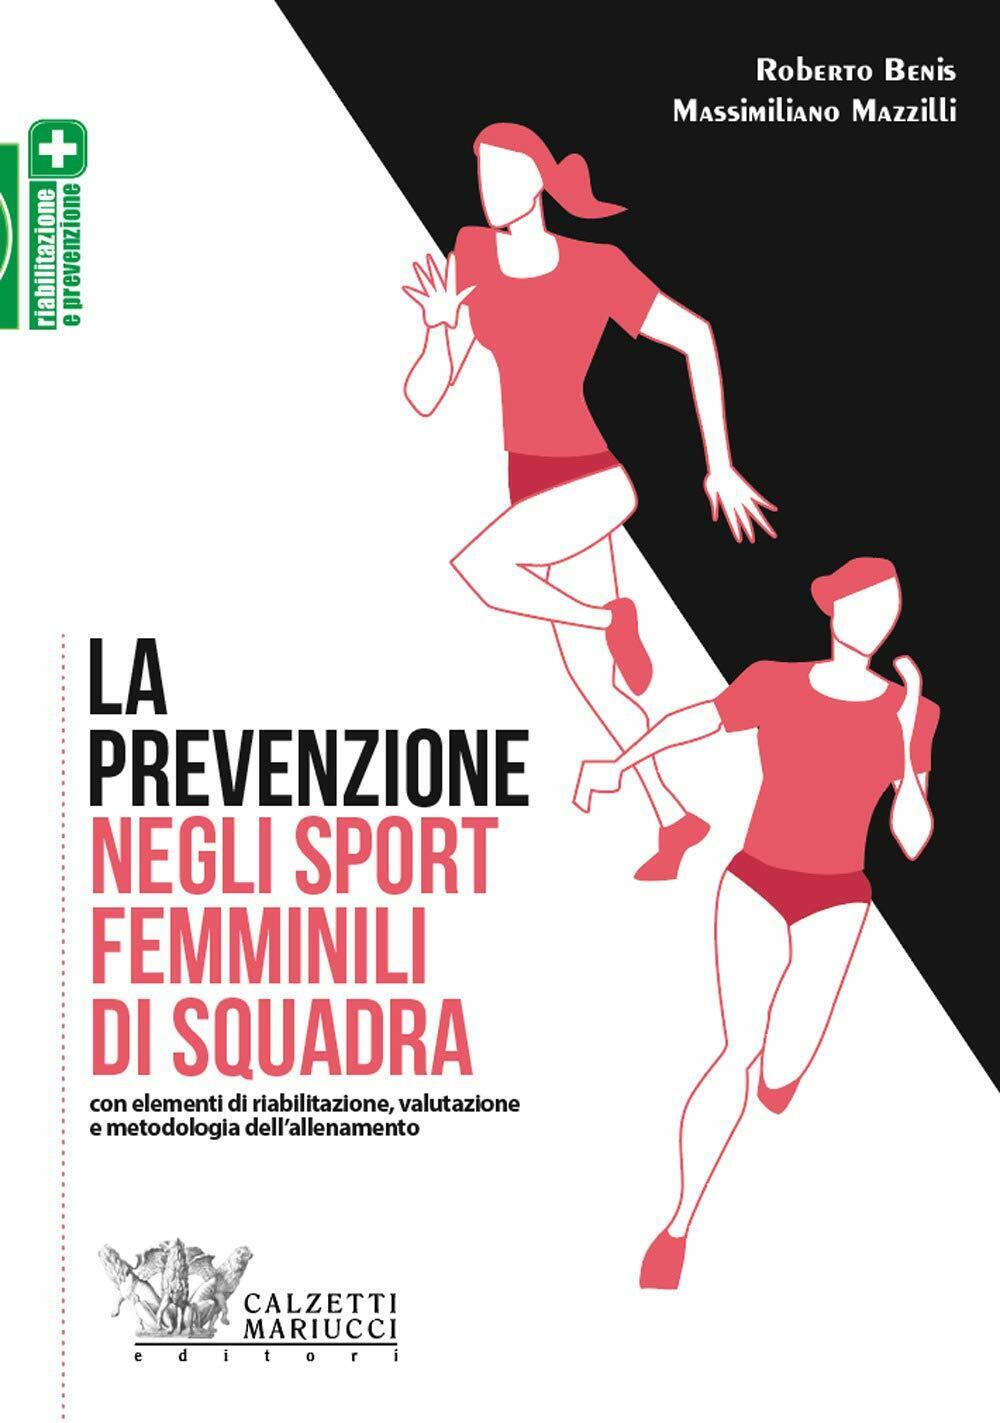 La prevenzione negli sport femminili di squadra - Benis,Mazzilli - 2019